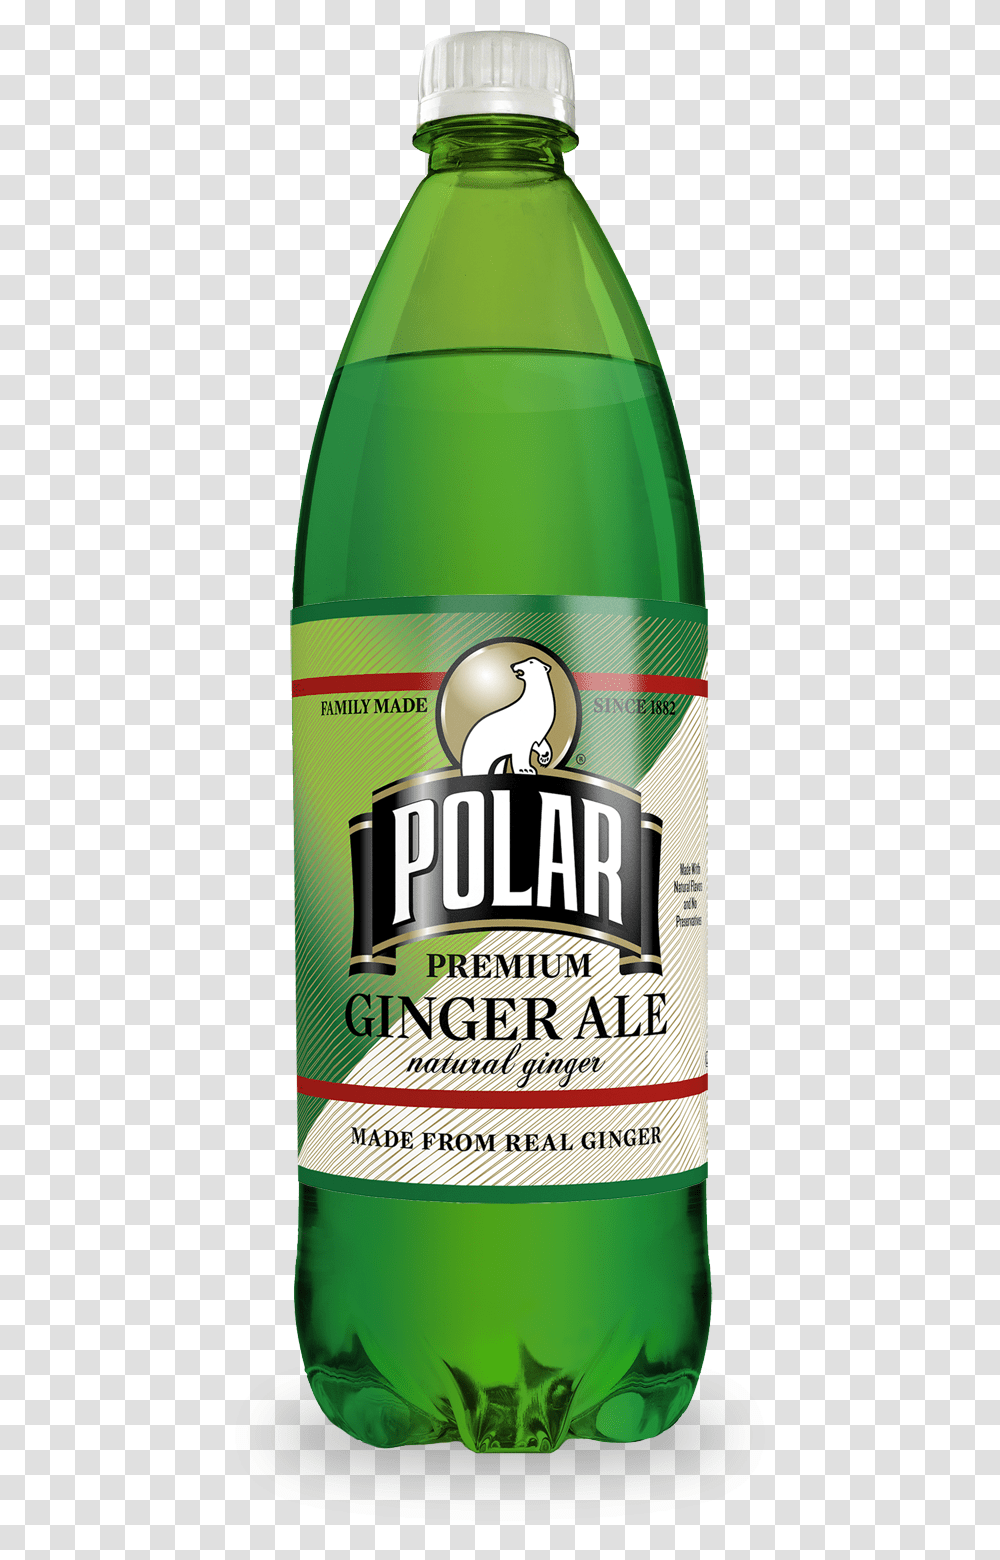 Polar Ginger Ale 1 Liter, Beverage, Drink, Bottle, Alcohol Transparent Png